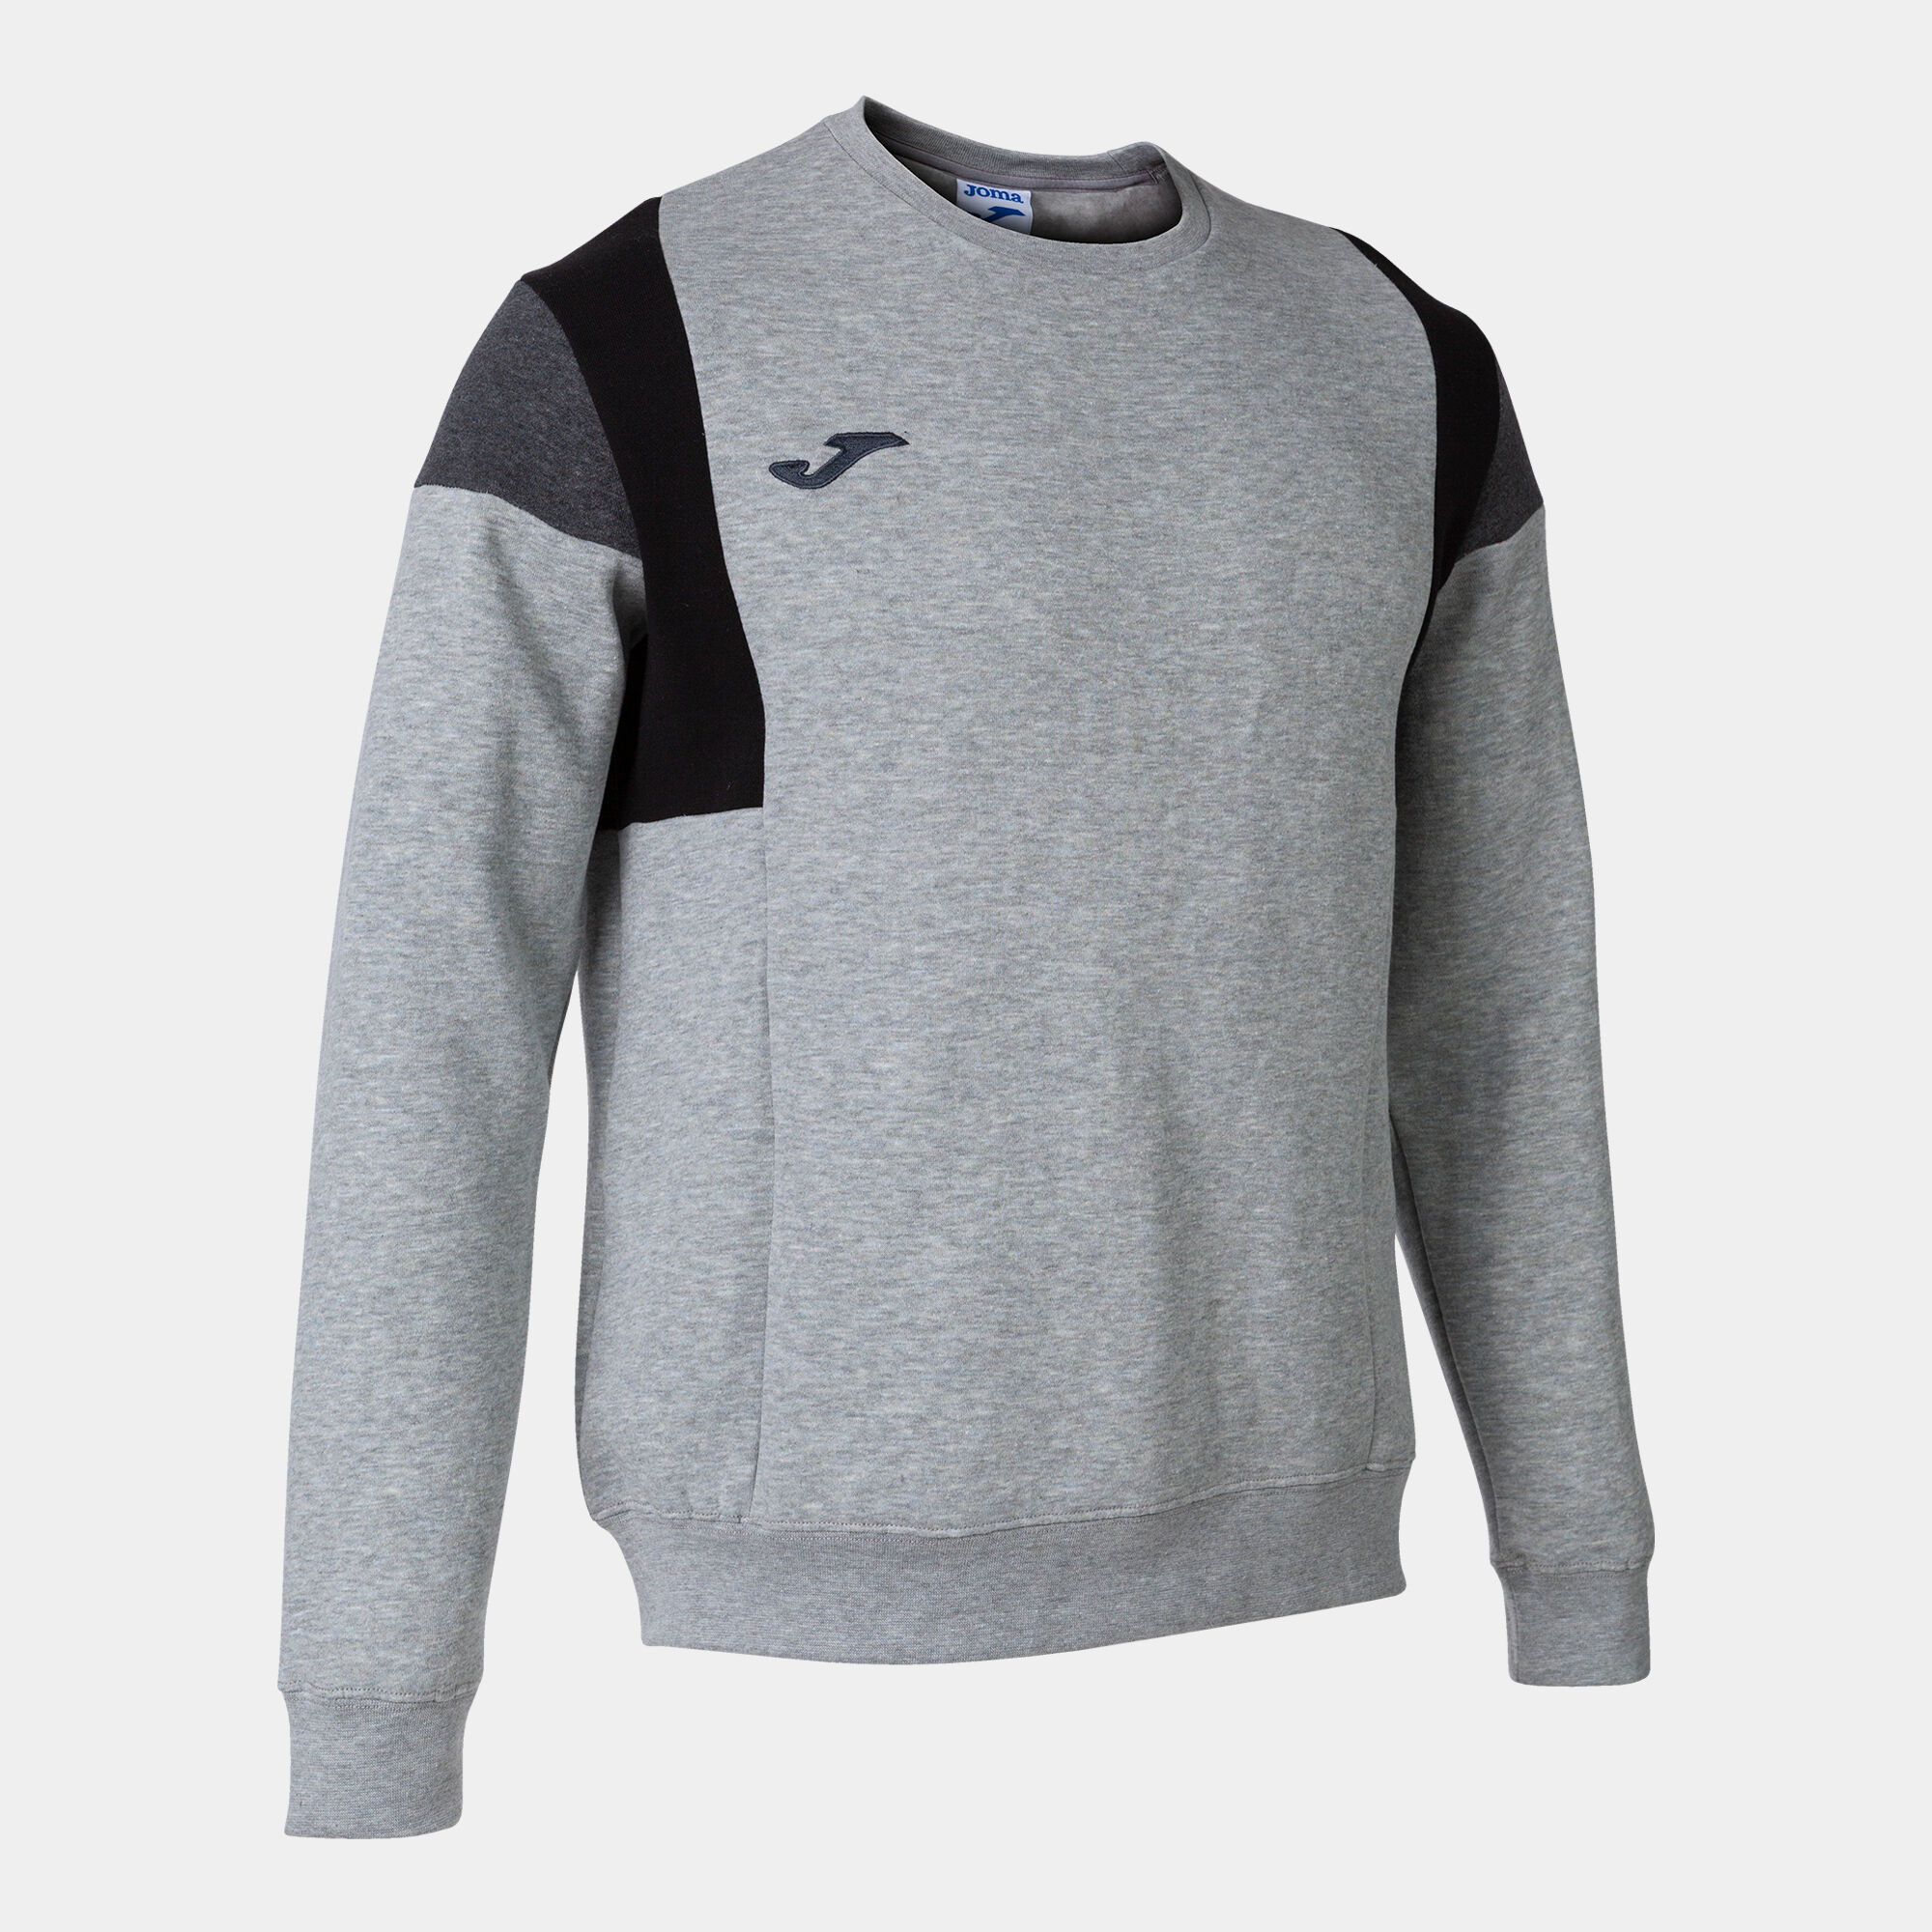 Sweatshirt man Confort III melange gray